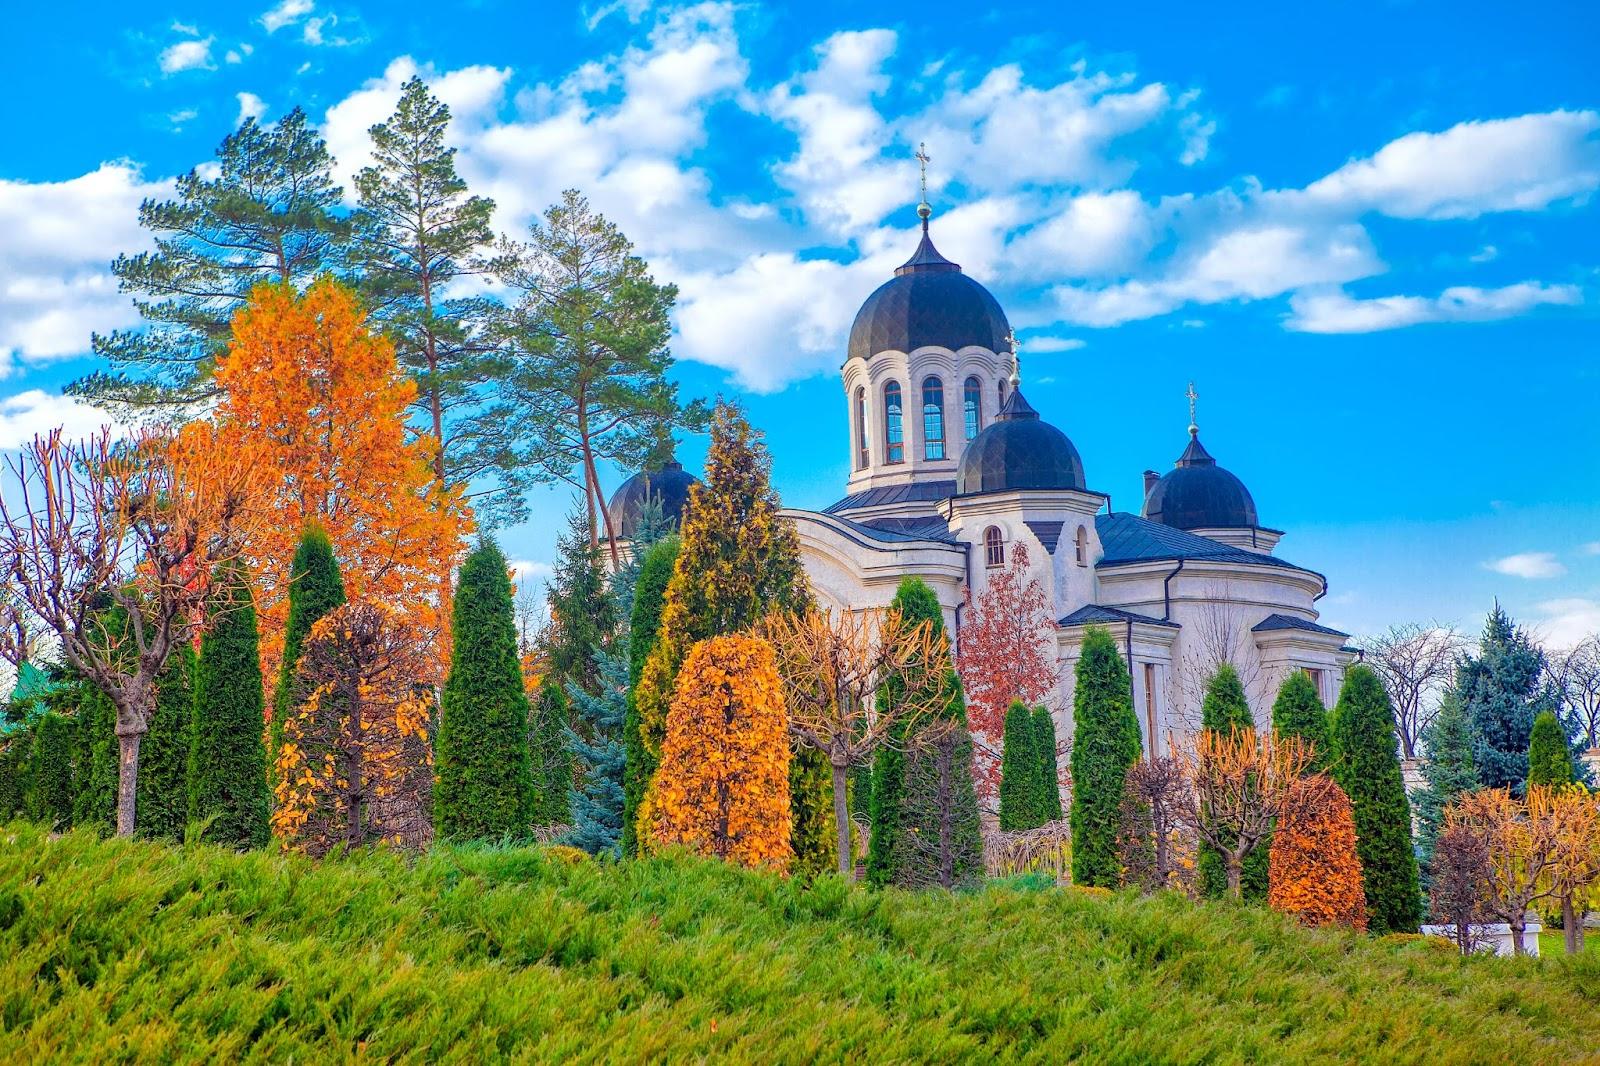 Famous Monastery Churchi from Moldova